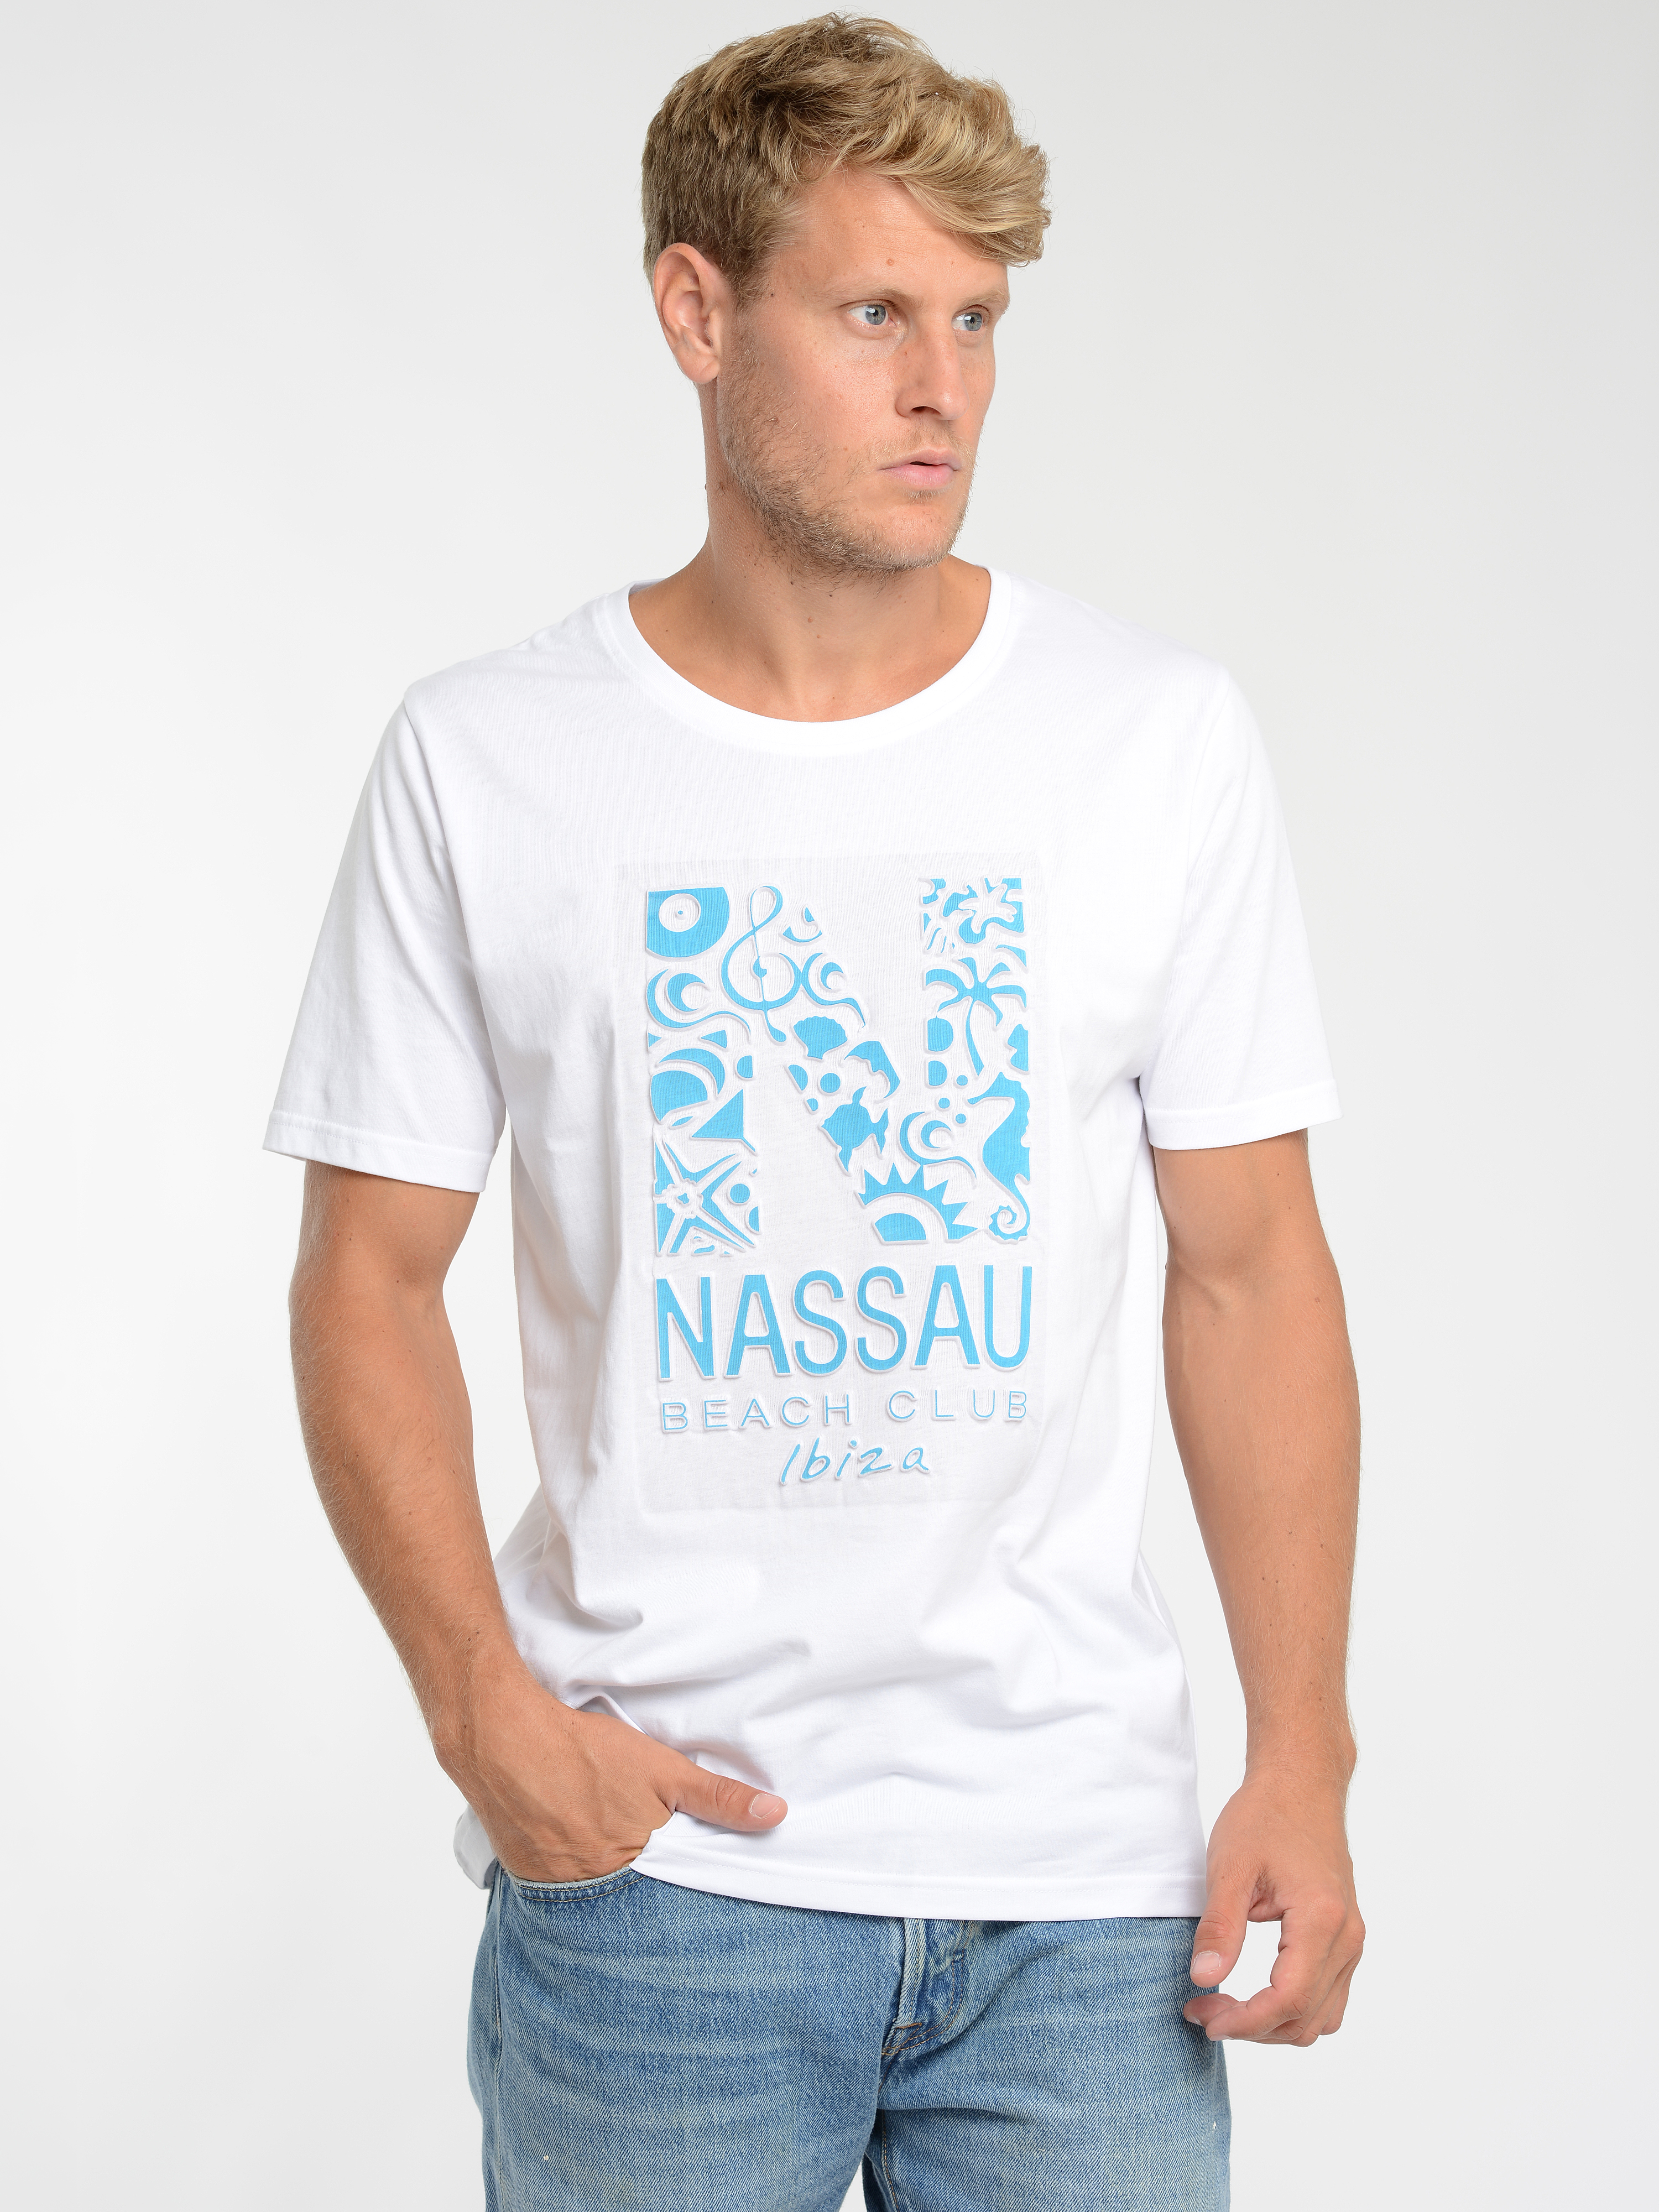 Nassau Beach T-Shirt NB22014 